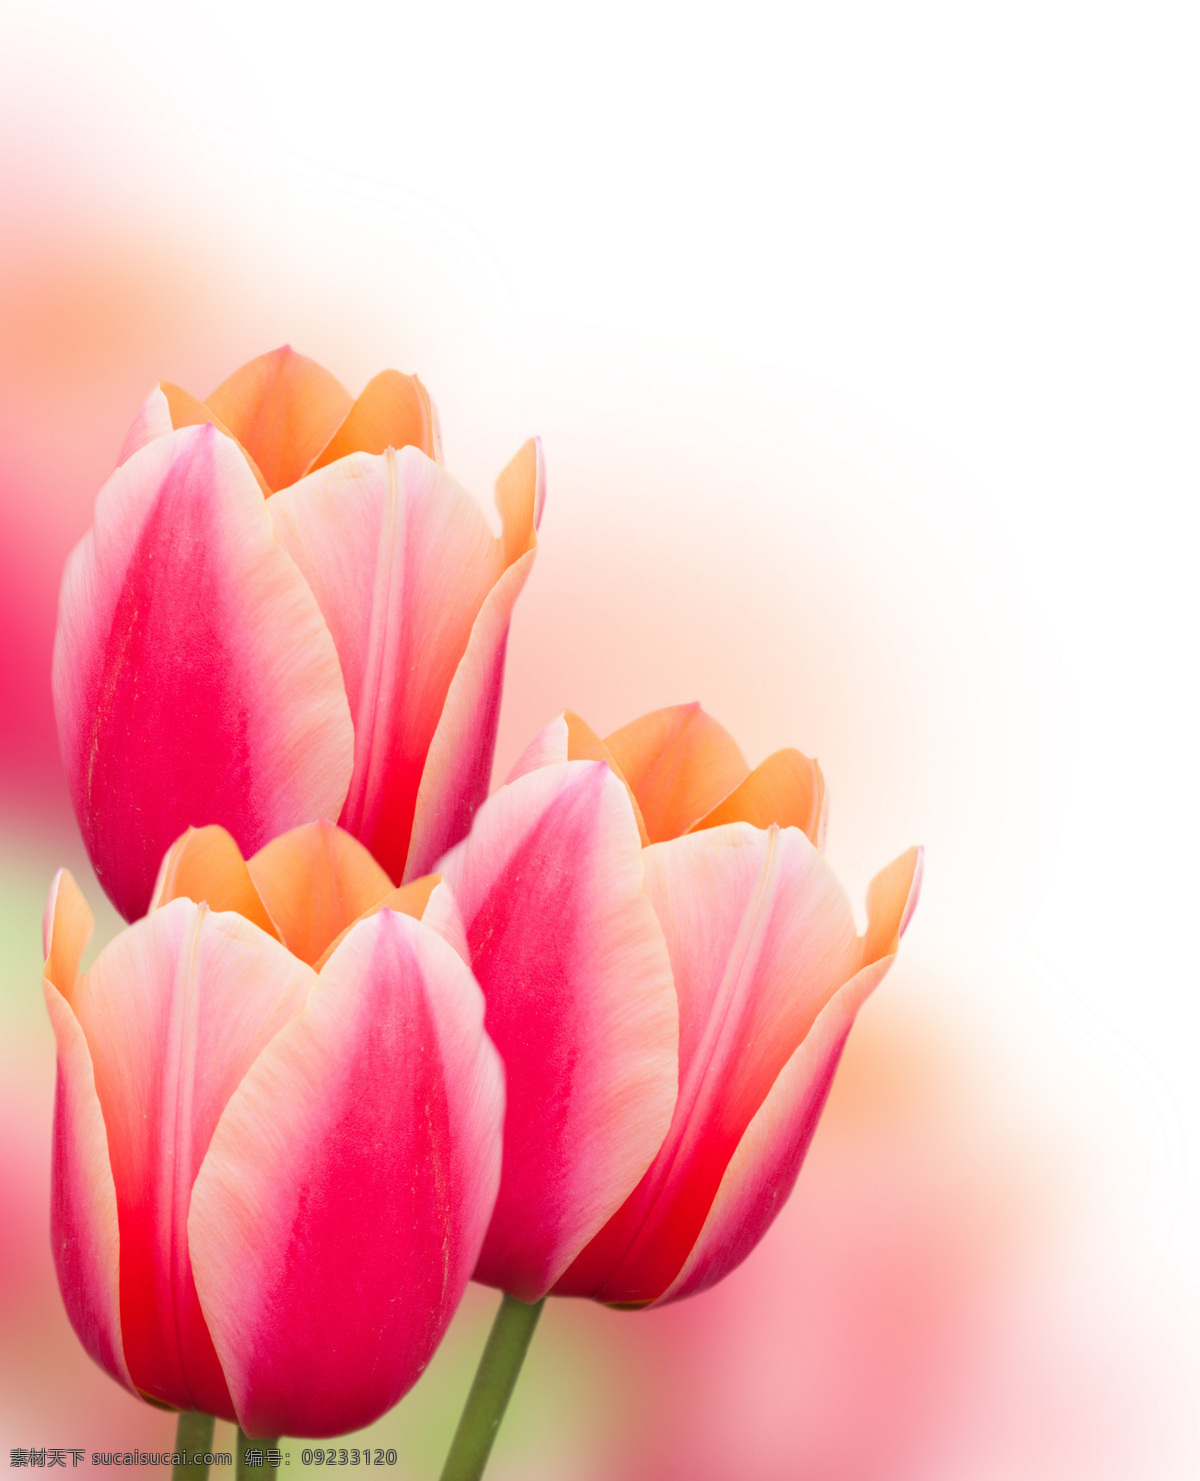 粉色郁金香 粉色鲜花 粉色花朵 鲜花素材 花枝 唯美花朵 花草 生物世界